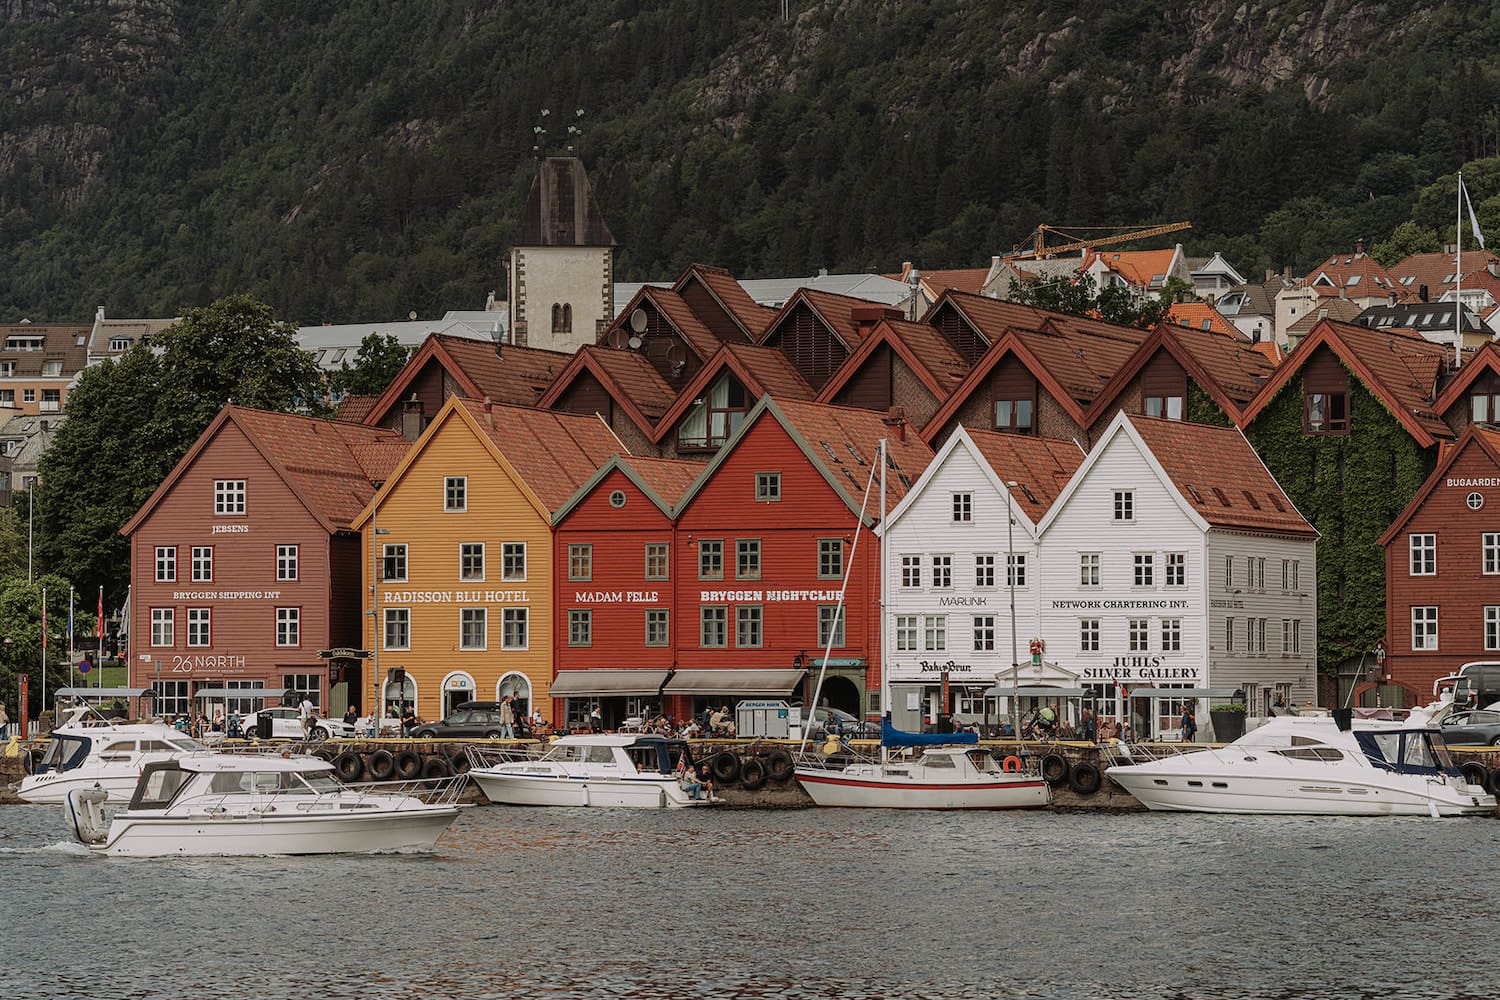 Noorwegen rondreis: beste reistijd, plekjes en routes